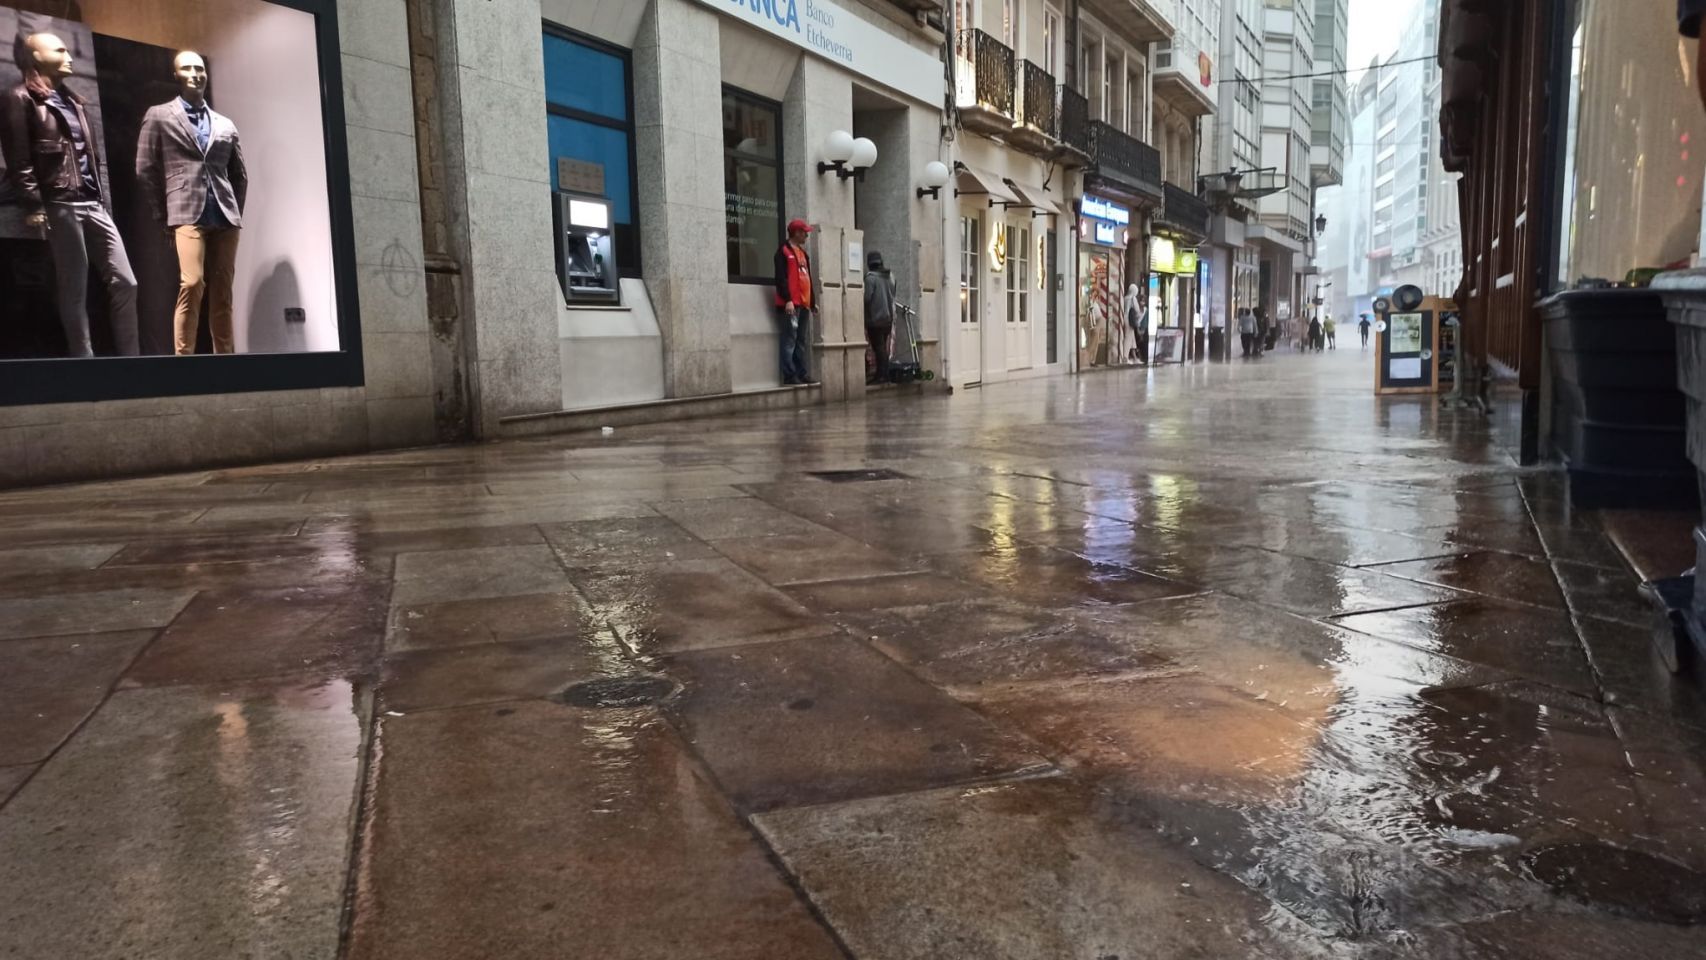 La calle Real de A Coruña durante una jornada de lluvia intensa.